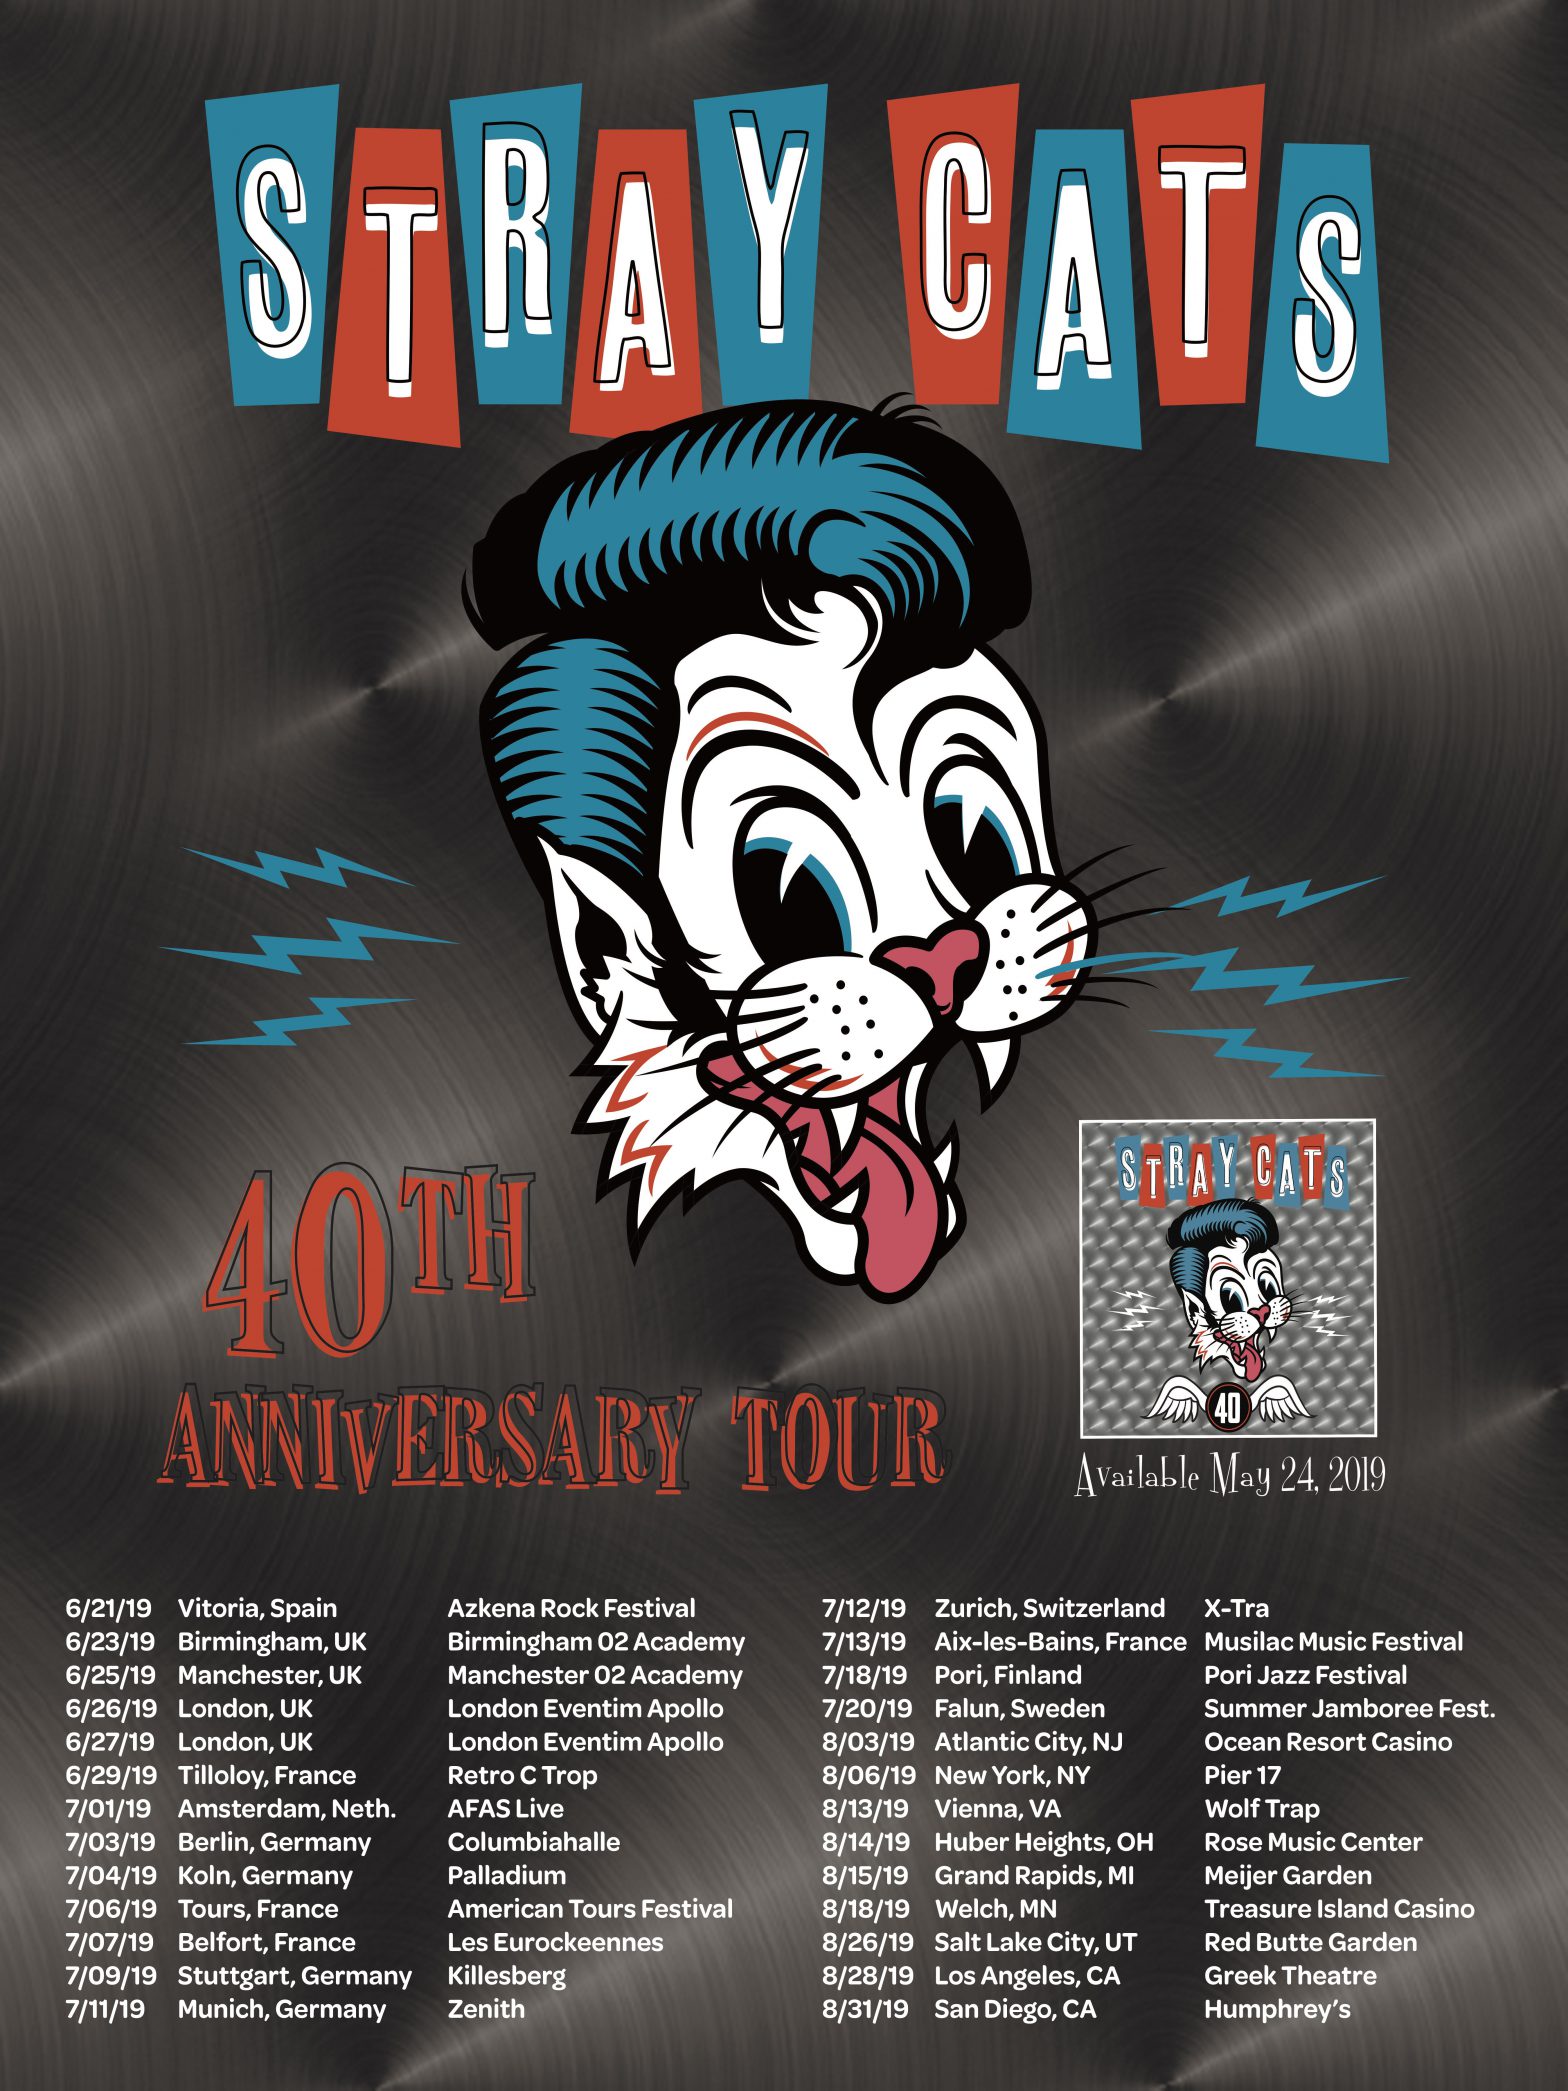 cats national tour dates